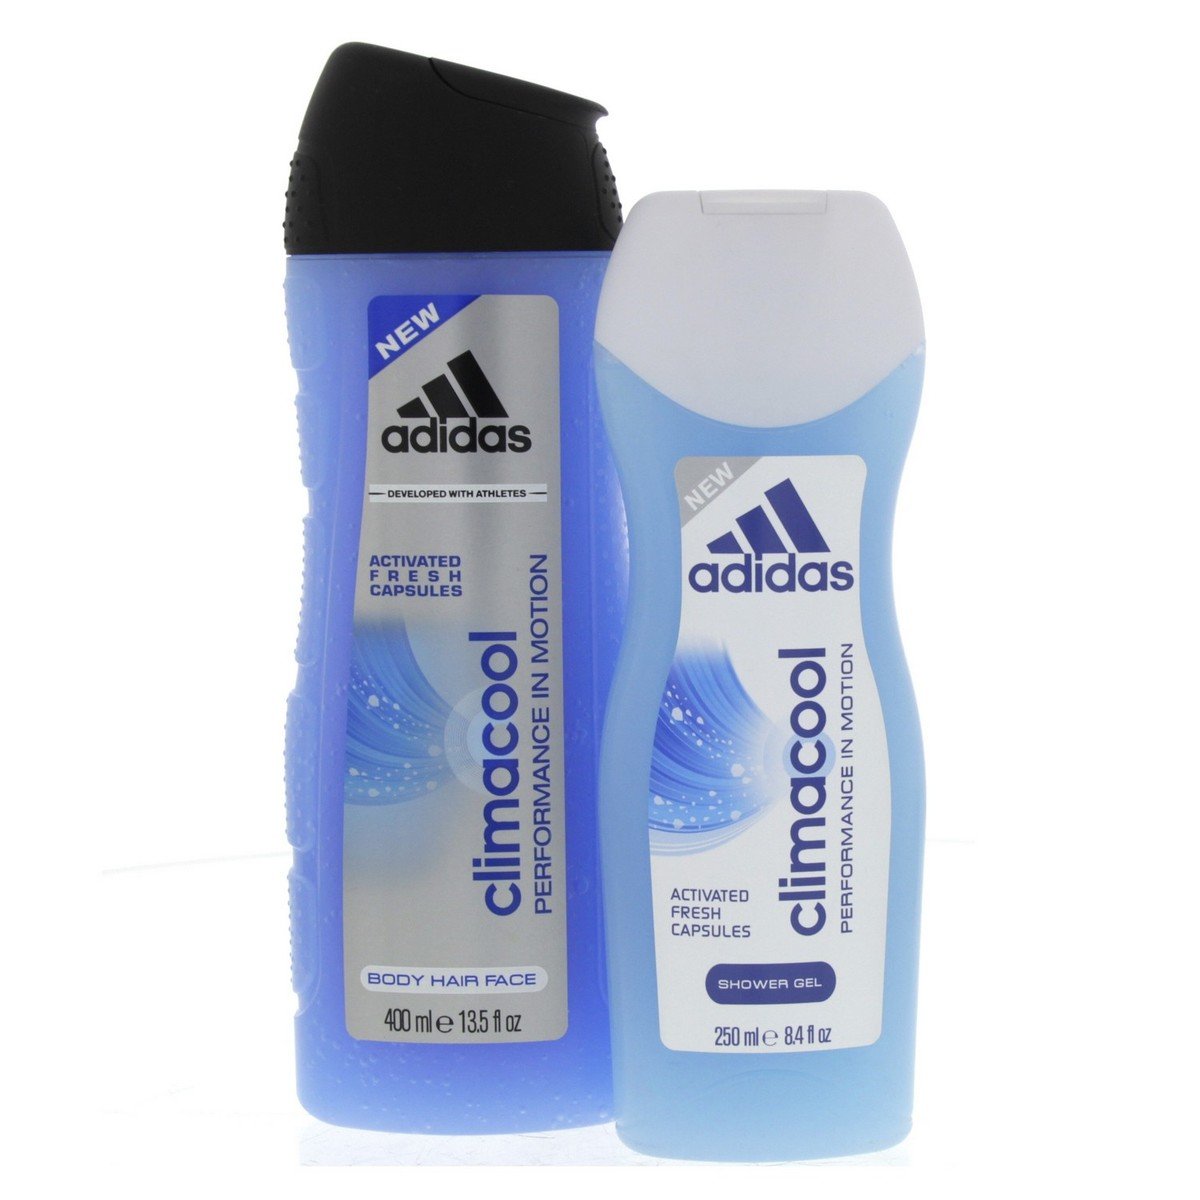 Adidas Shower Gel Climacool 400 ml + 250 ml